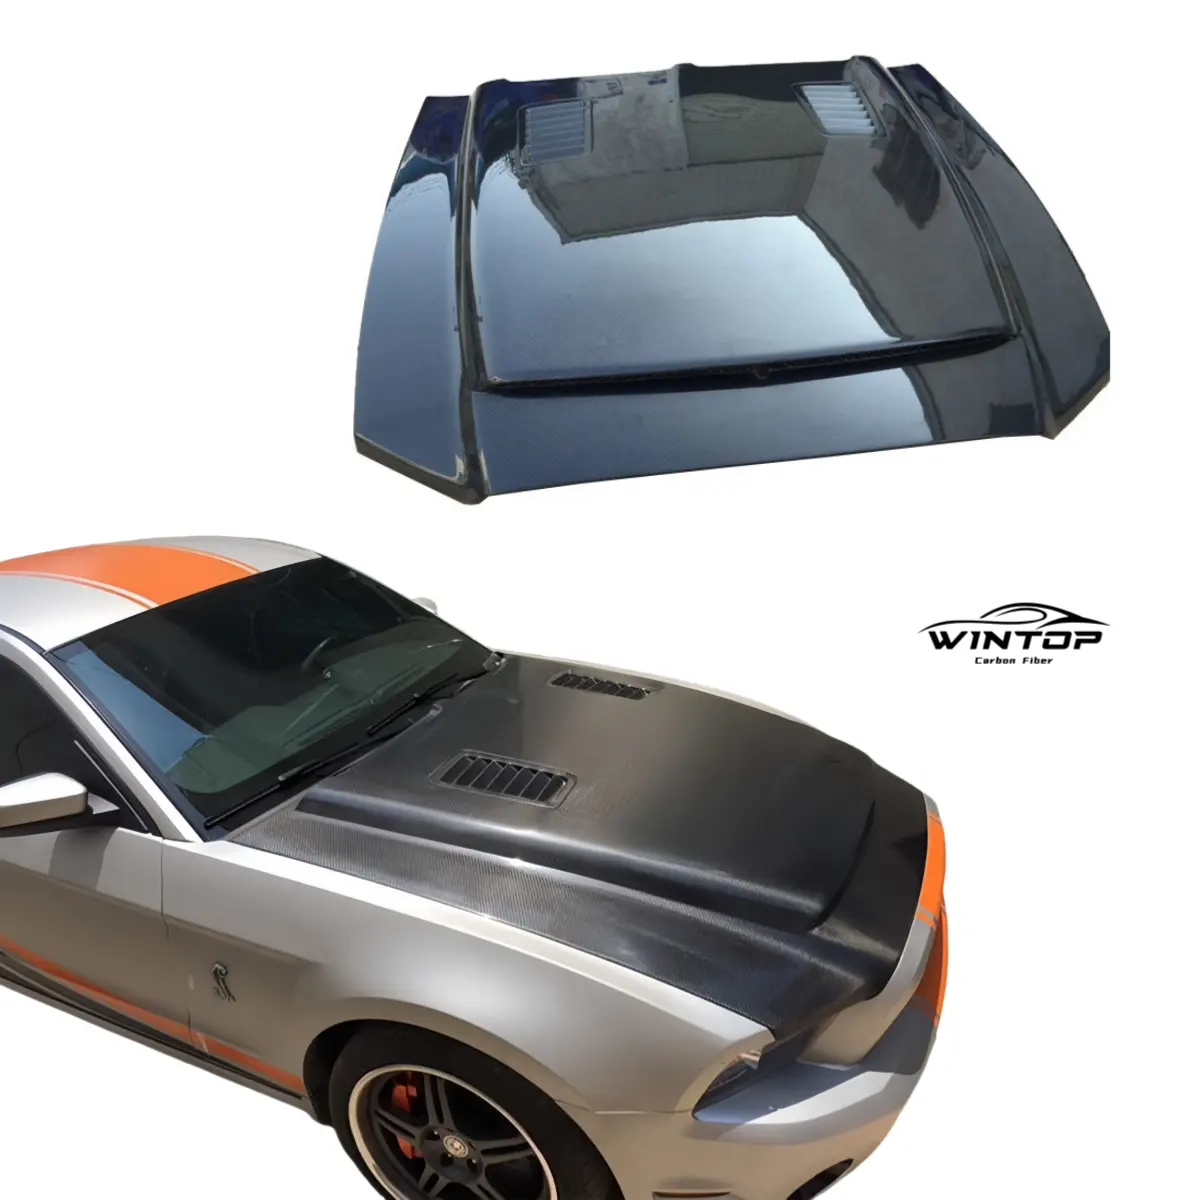 Sợi Carbon động cơ mui xe cho Ford Mustang Gt500 2013 2014